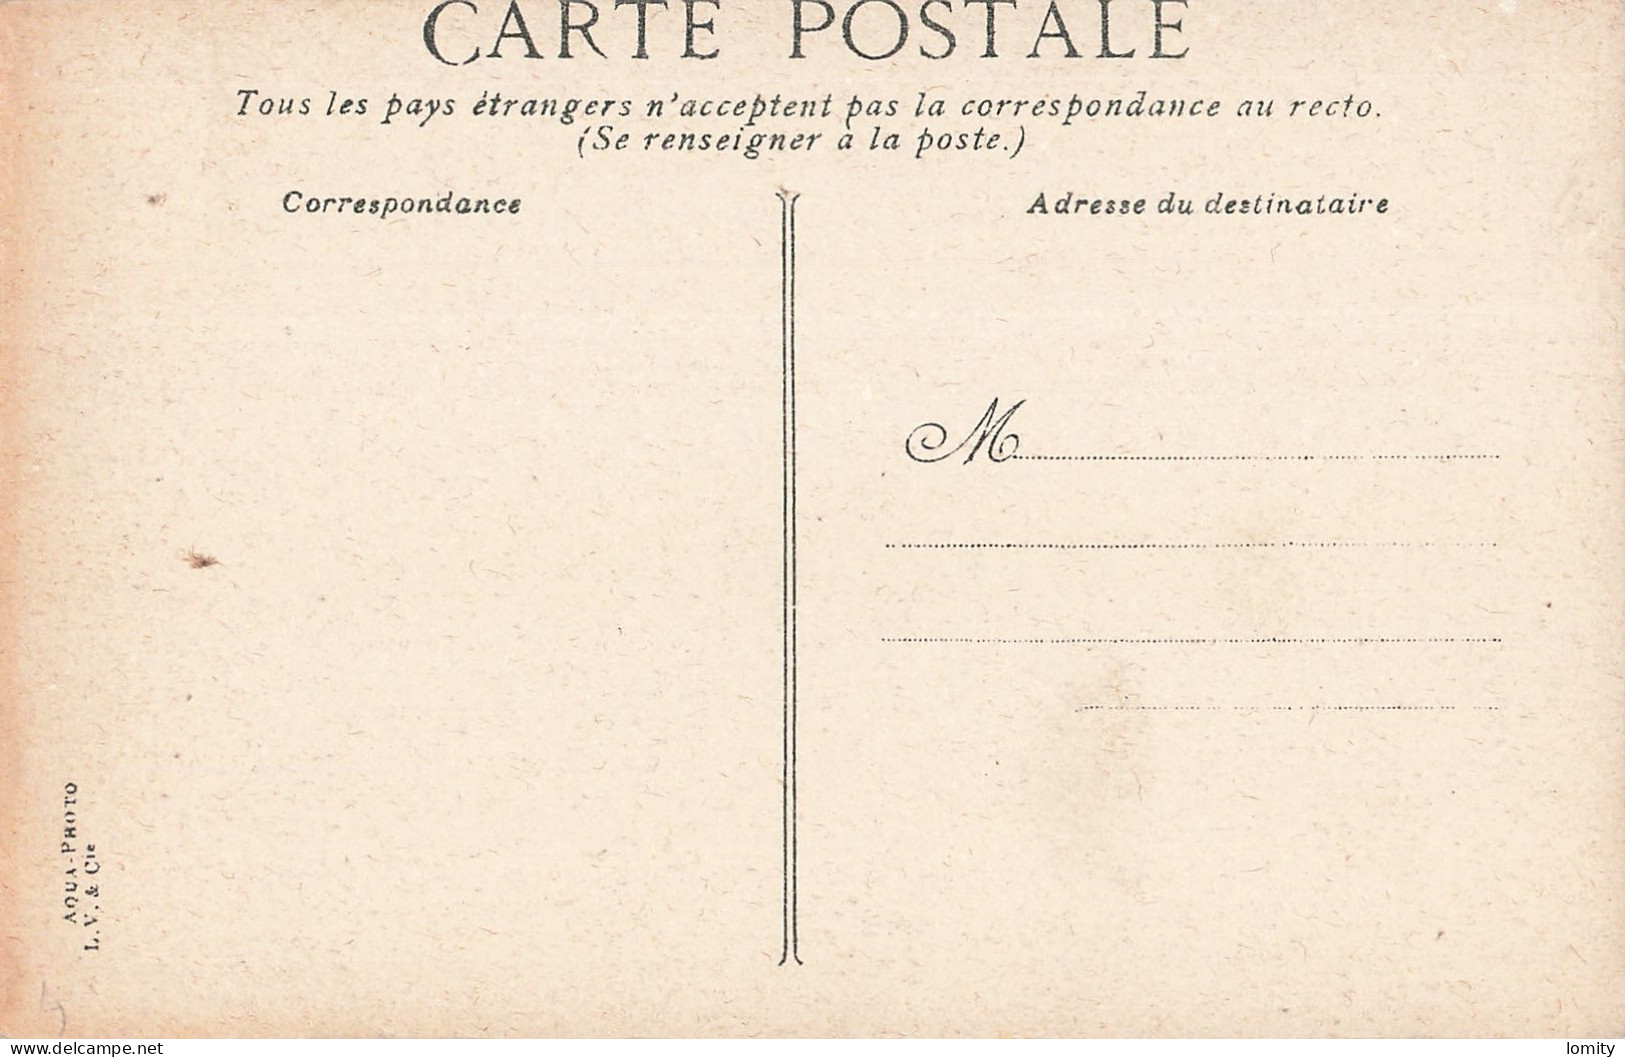 Destockage lot de 23 cartes postales CPA Ille et vilaine Saint Malo Cancale Paramé vedettes dinardaises Dinard